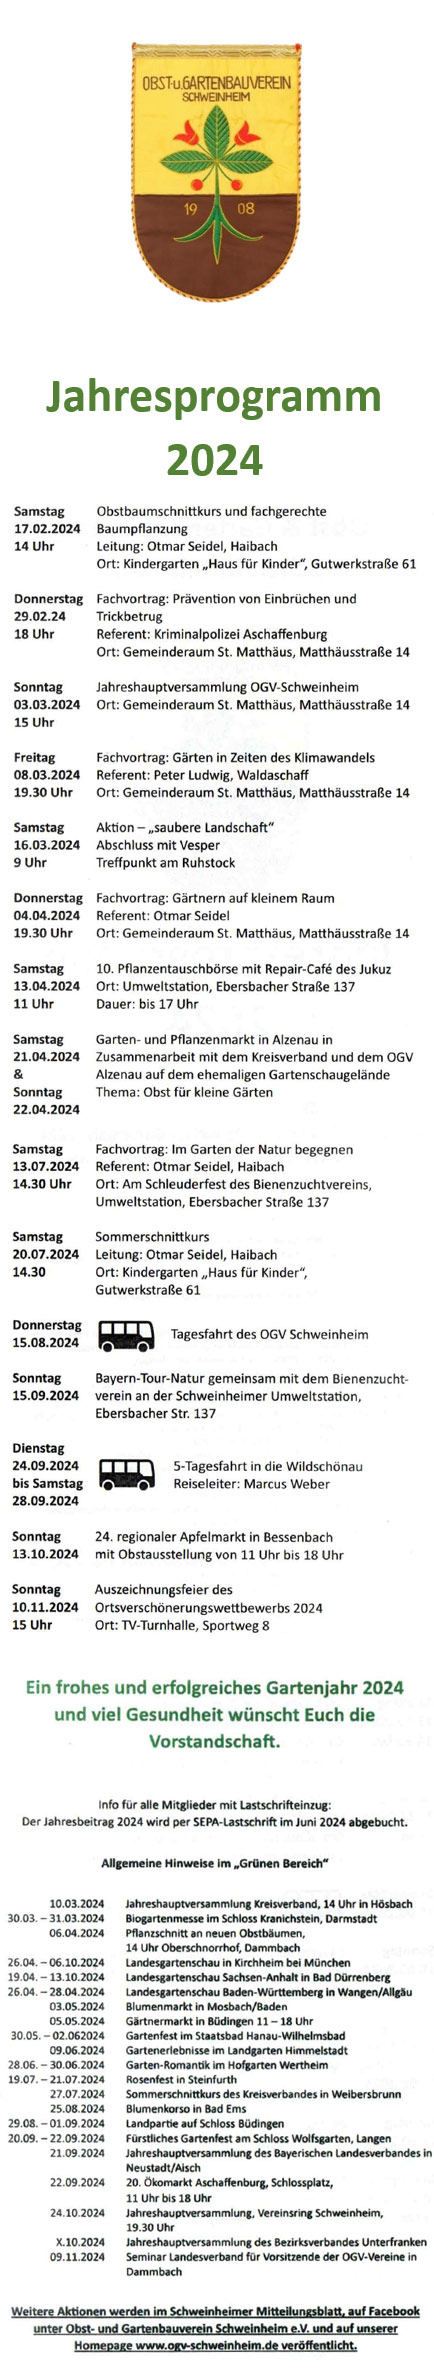 Jahresprogramm OGV Schweinheim